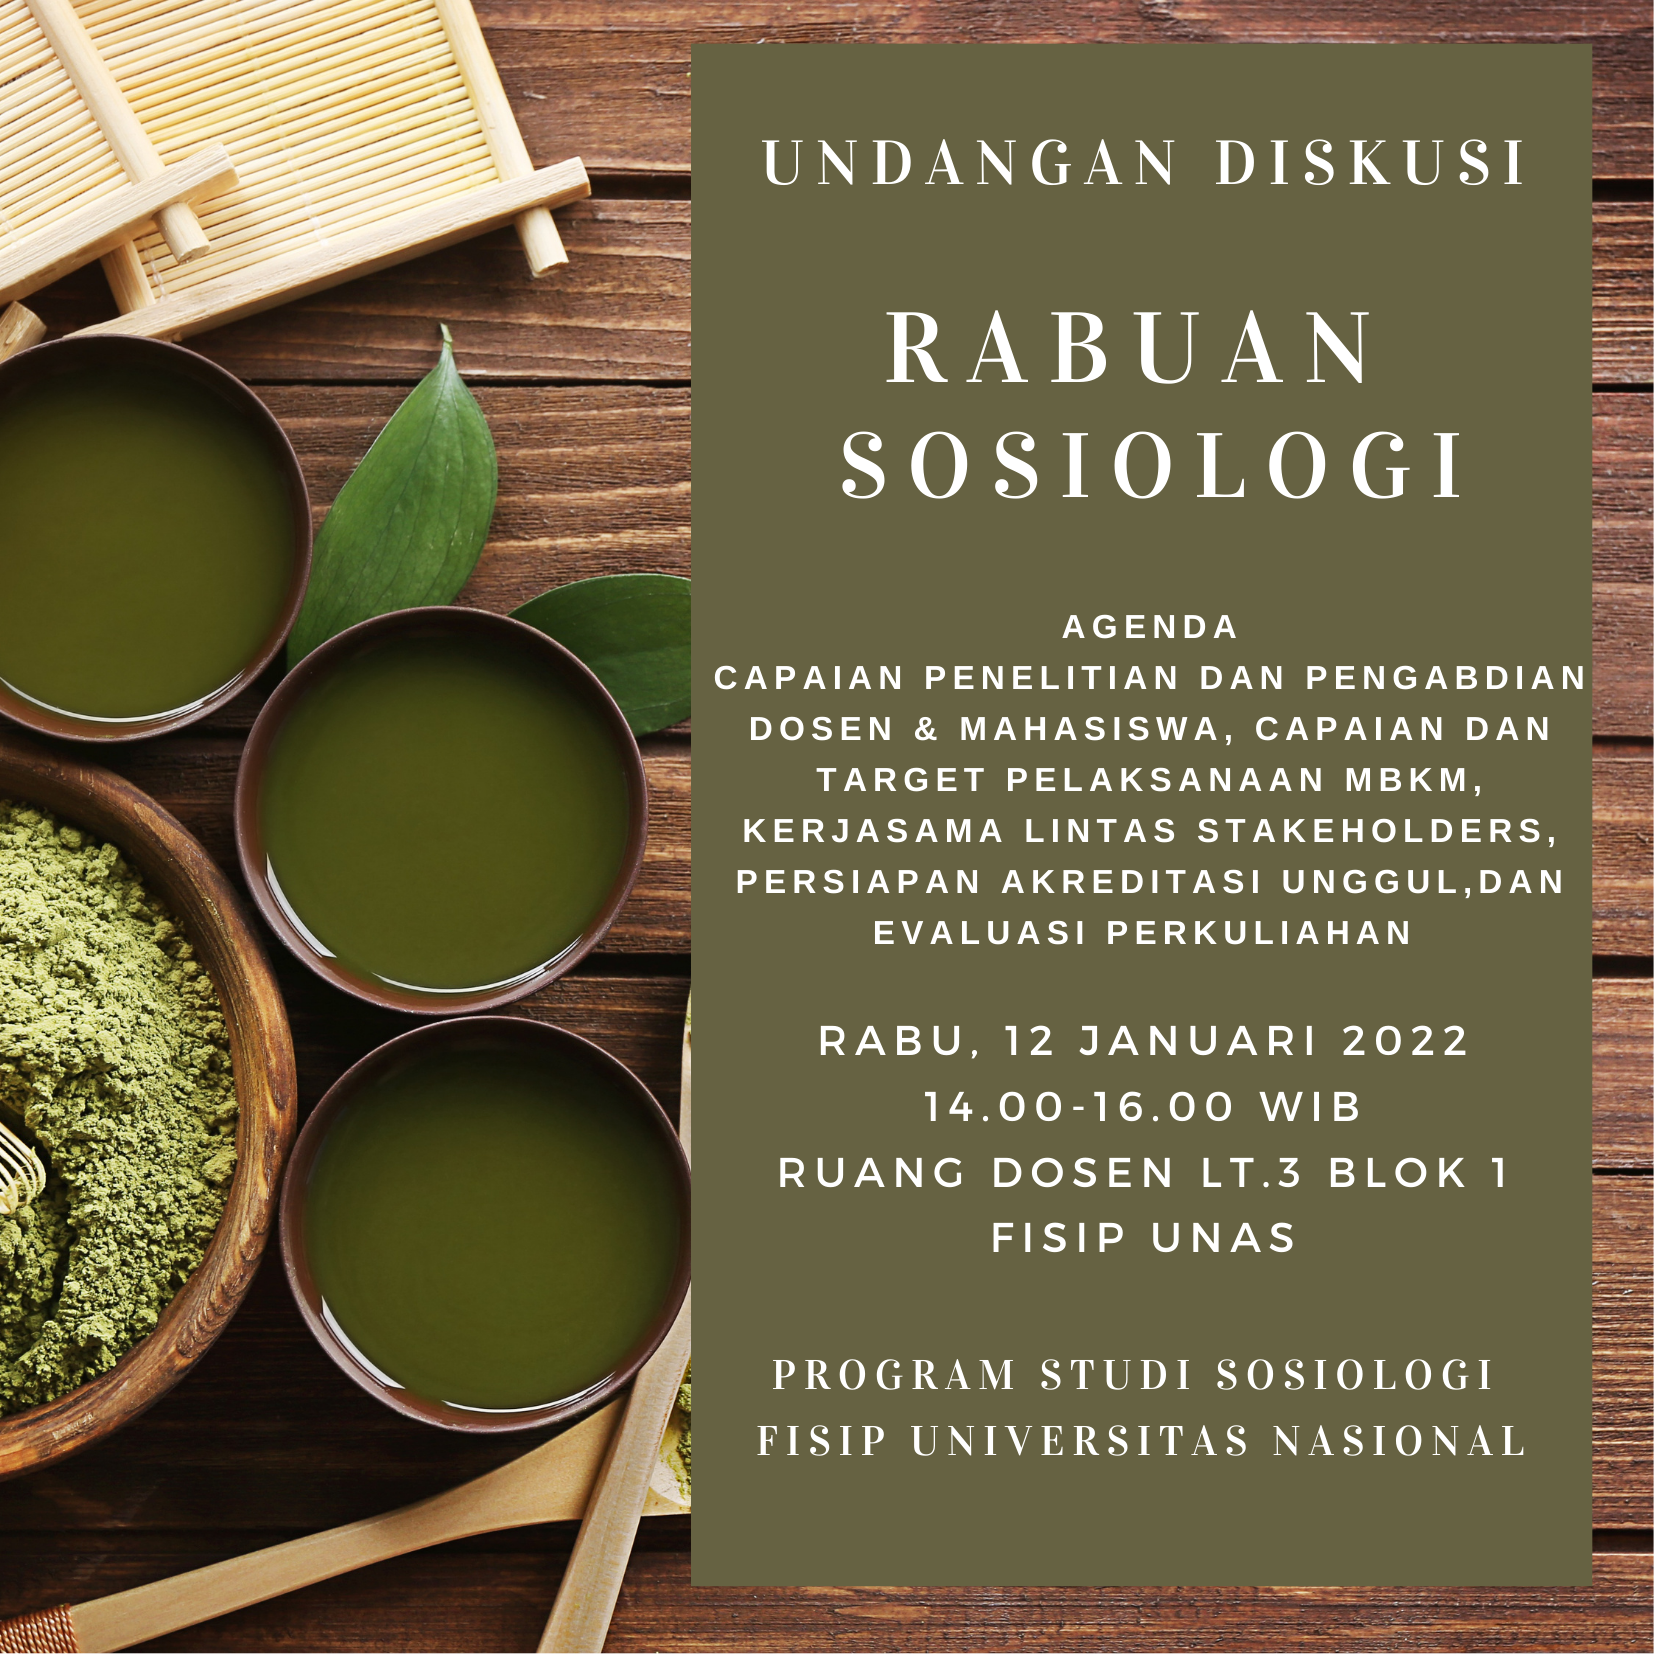 You are currently viewing Rabuan Sosiologi 12 Januari 2022